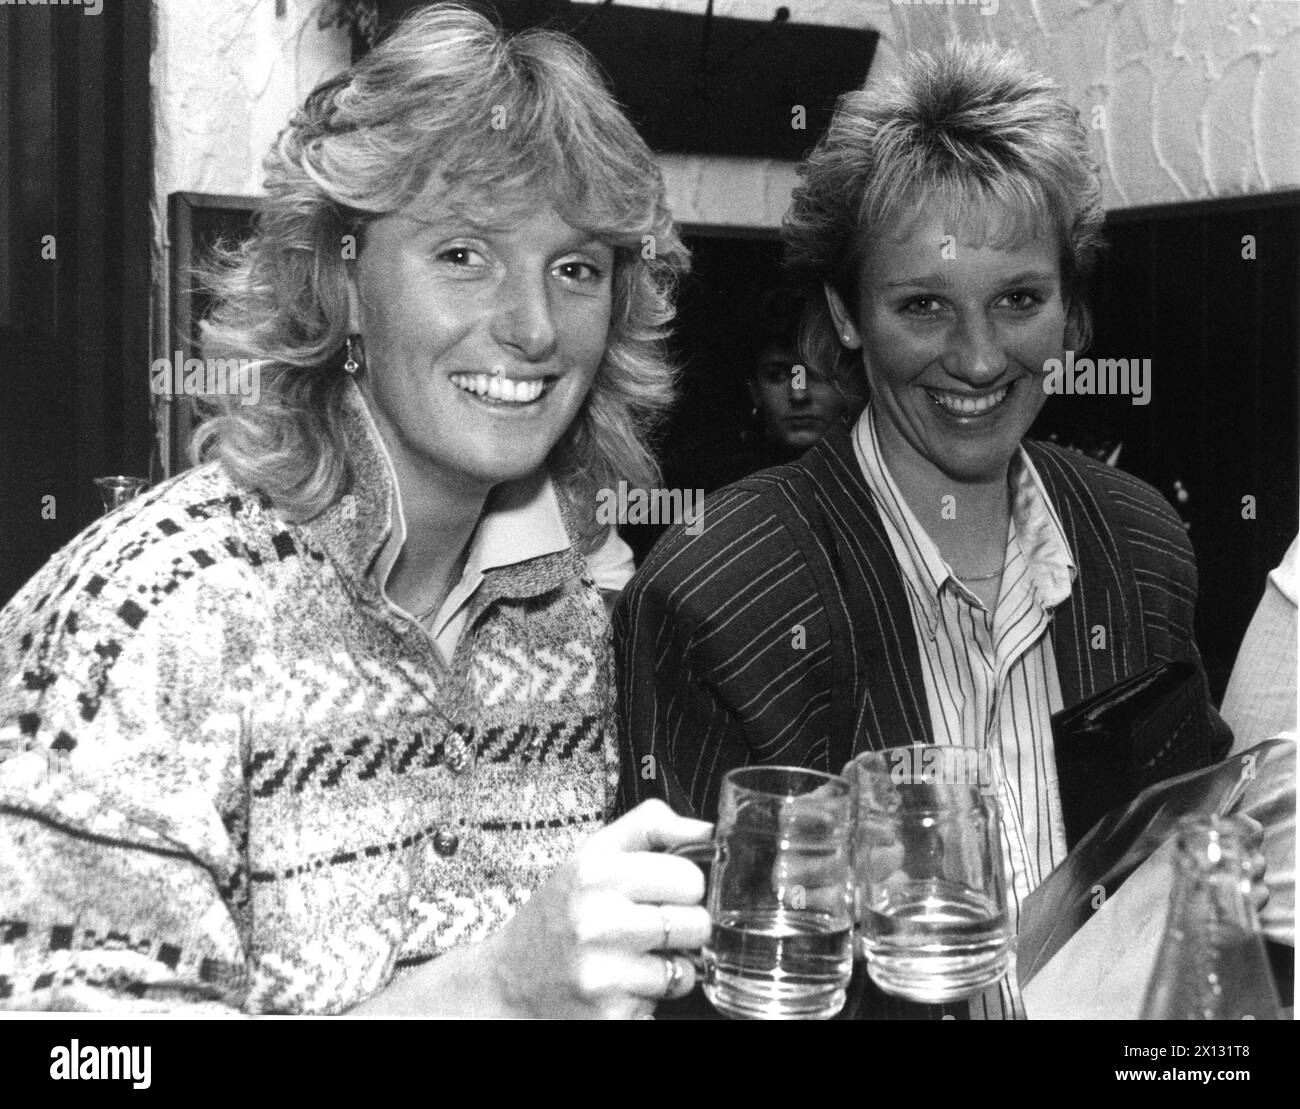 La photo a été prise le 9 octobre 1987 et montre la skieuse autrichienne Sylvia Eder (à gauche) serrant des lunettes avec sa collègue allemande Michaela Gerg lors d'une réunion de compagnie à Vienne. - 19871009_PD0012 - Rechteinfo : droits gérés (RM) Banque D'Images